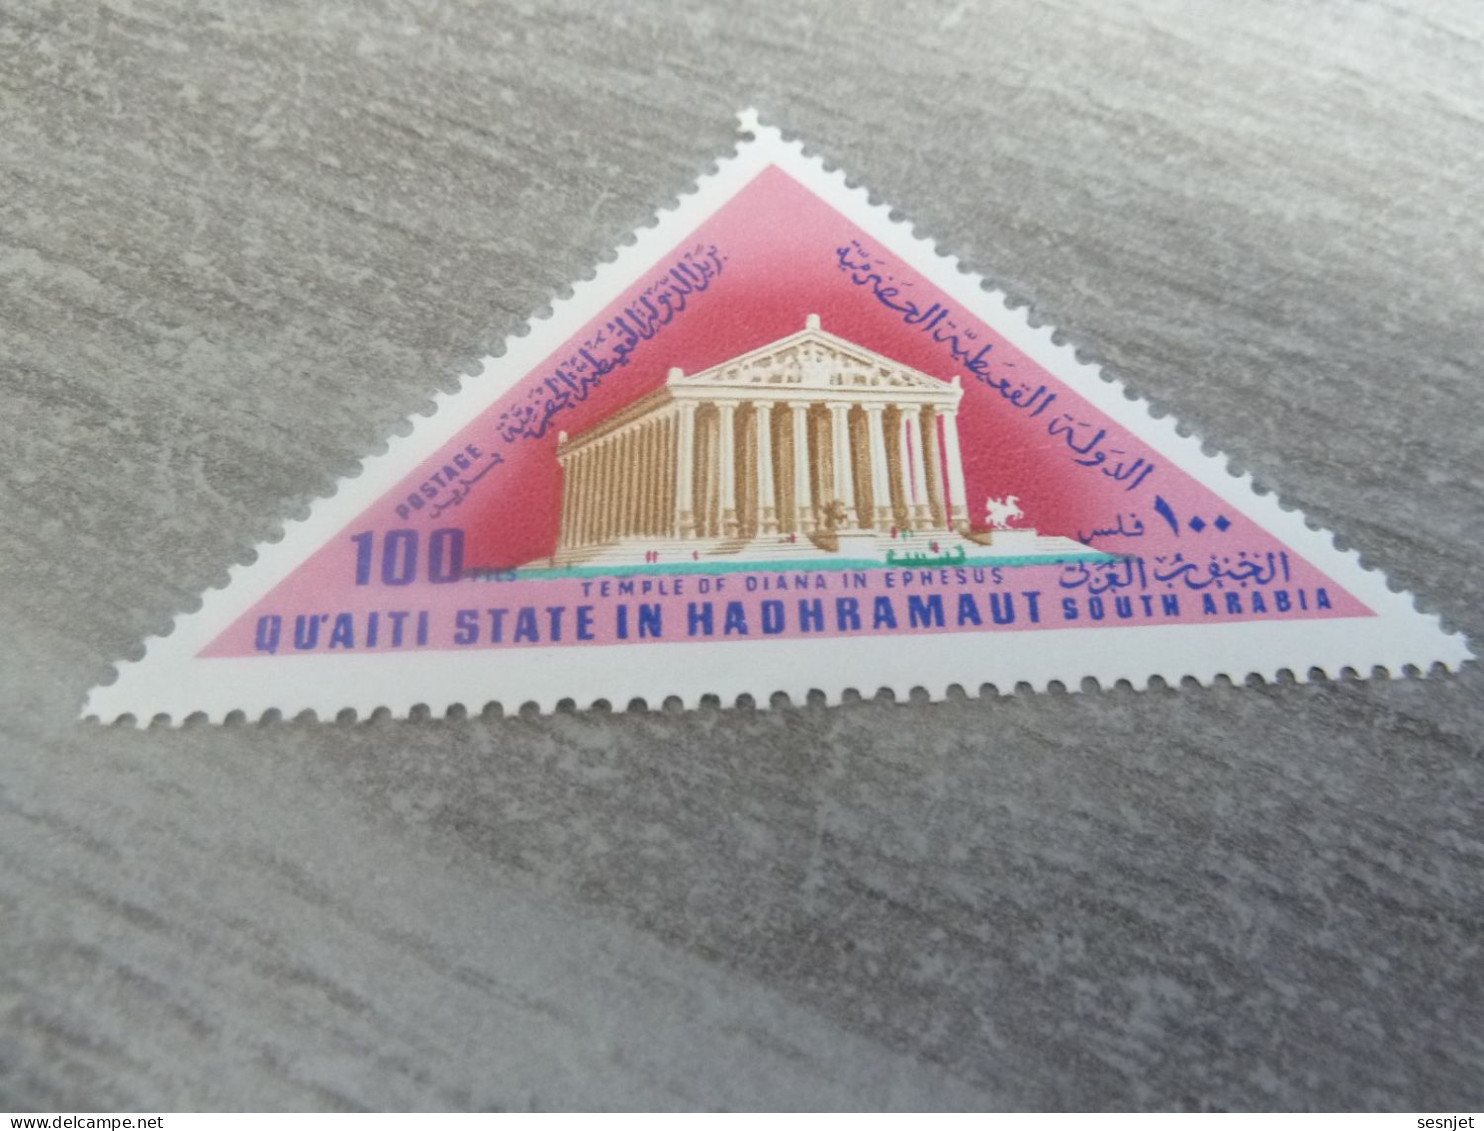 Qu'aiti State In Hadhramaut - Temple Of Diana In Ephesus - Val 100 Fils - Postage - Multicolore - Neuf - - Mitologia